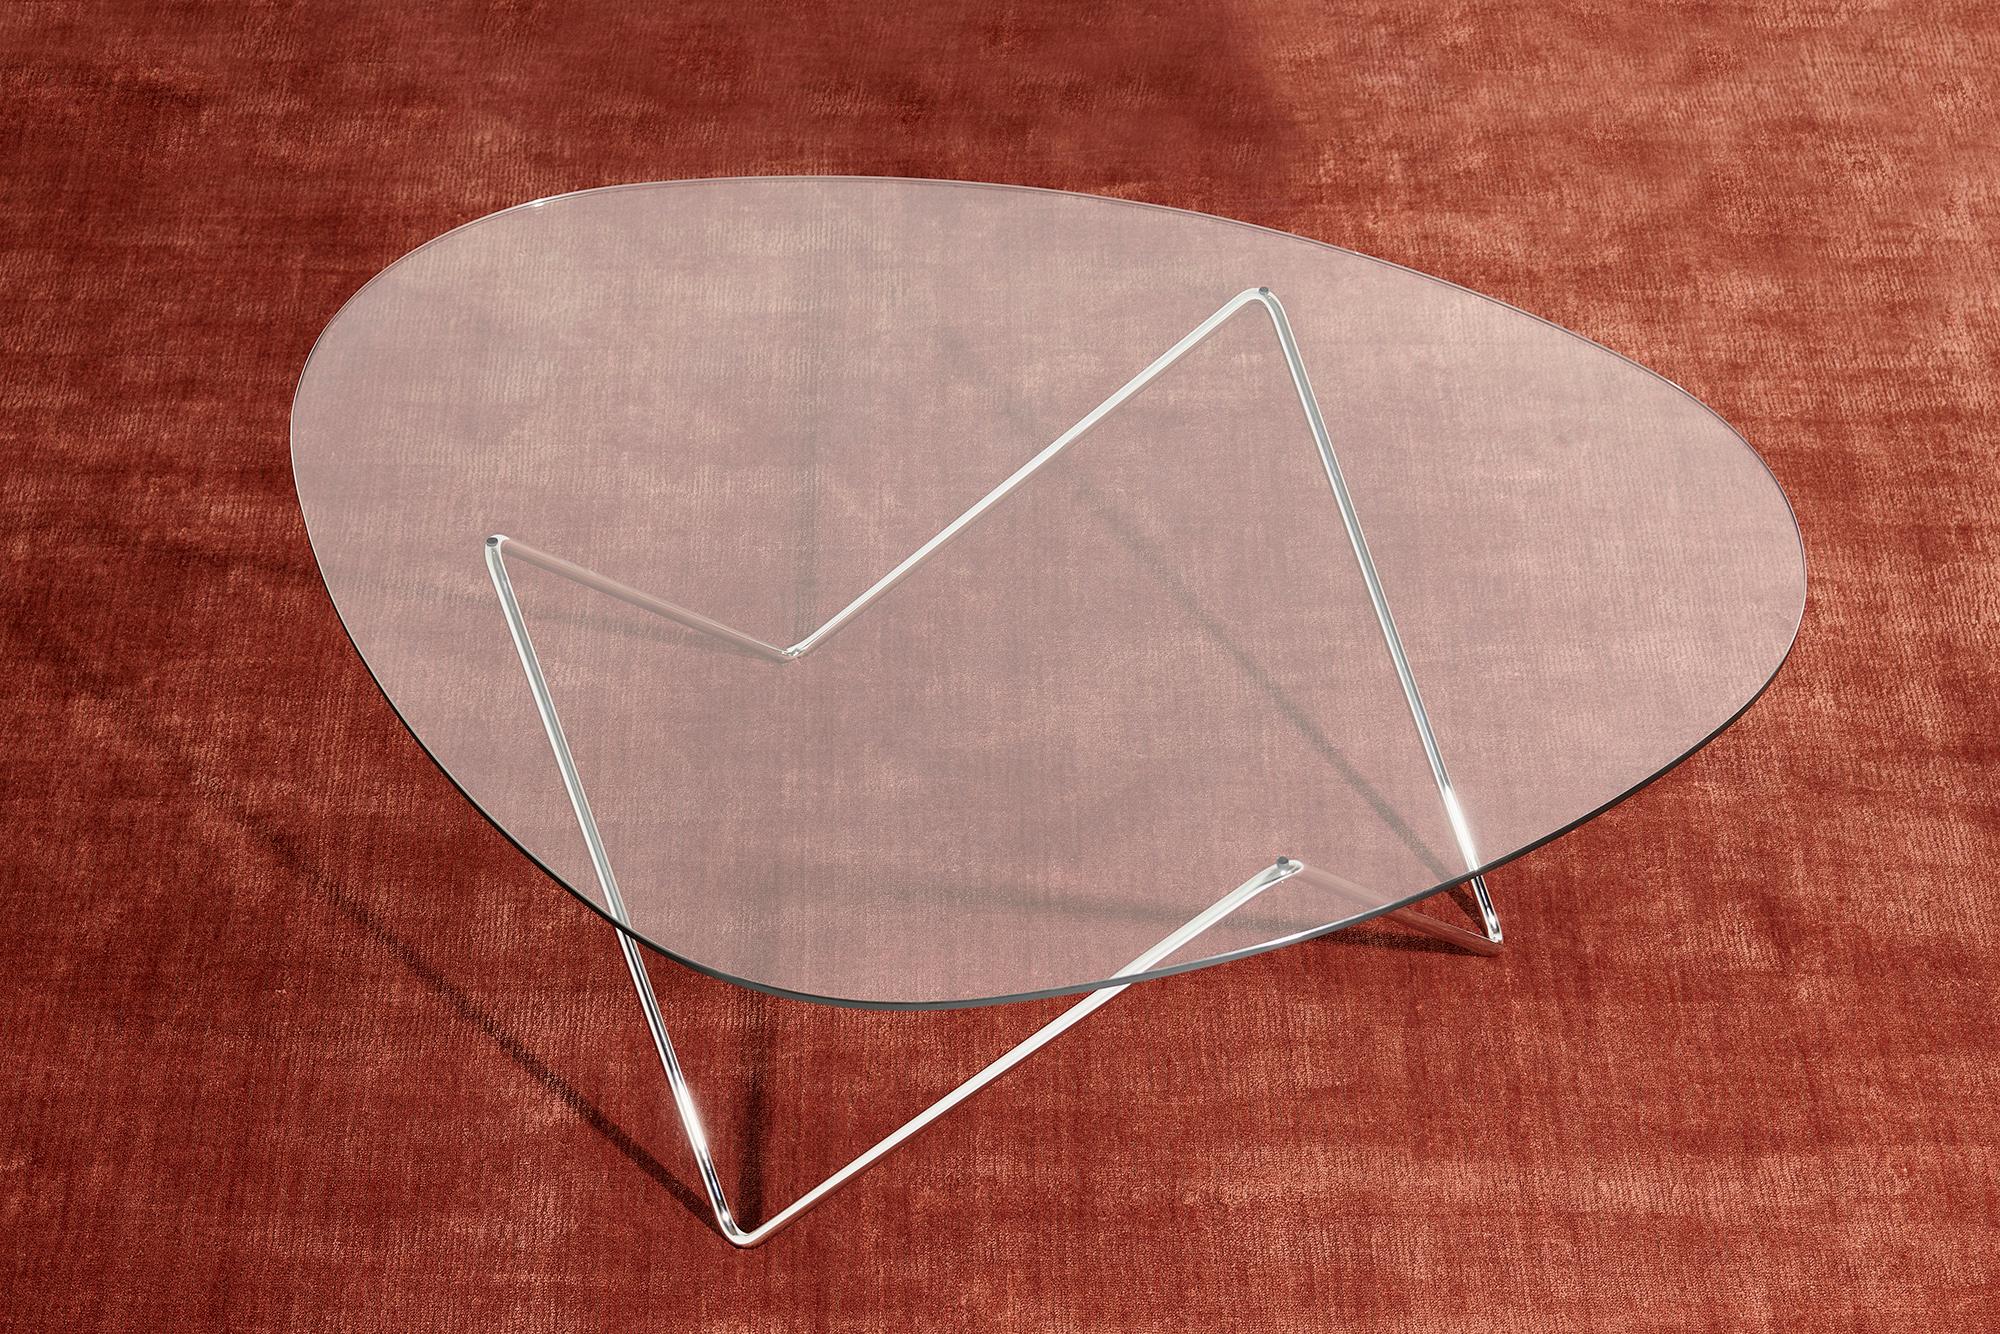 Table basse Barba Corsini Pedrera en chrome pour Gubi. La table basse Pedrera a été conçue en 1955 par Barba Corsini pour le loft de La Pedrera, le célèbre monument de Barcelone. Exécutée en verre avec une base chromée, la table s'intègre bien dans